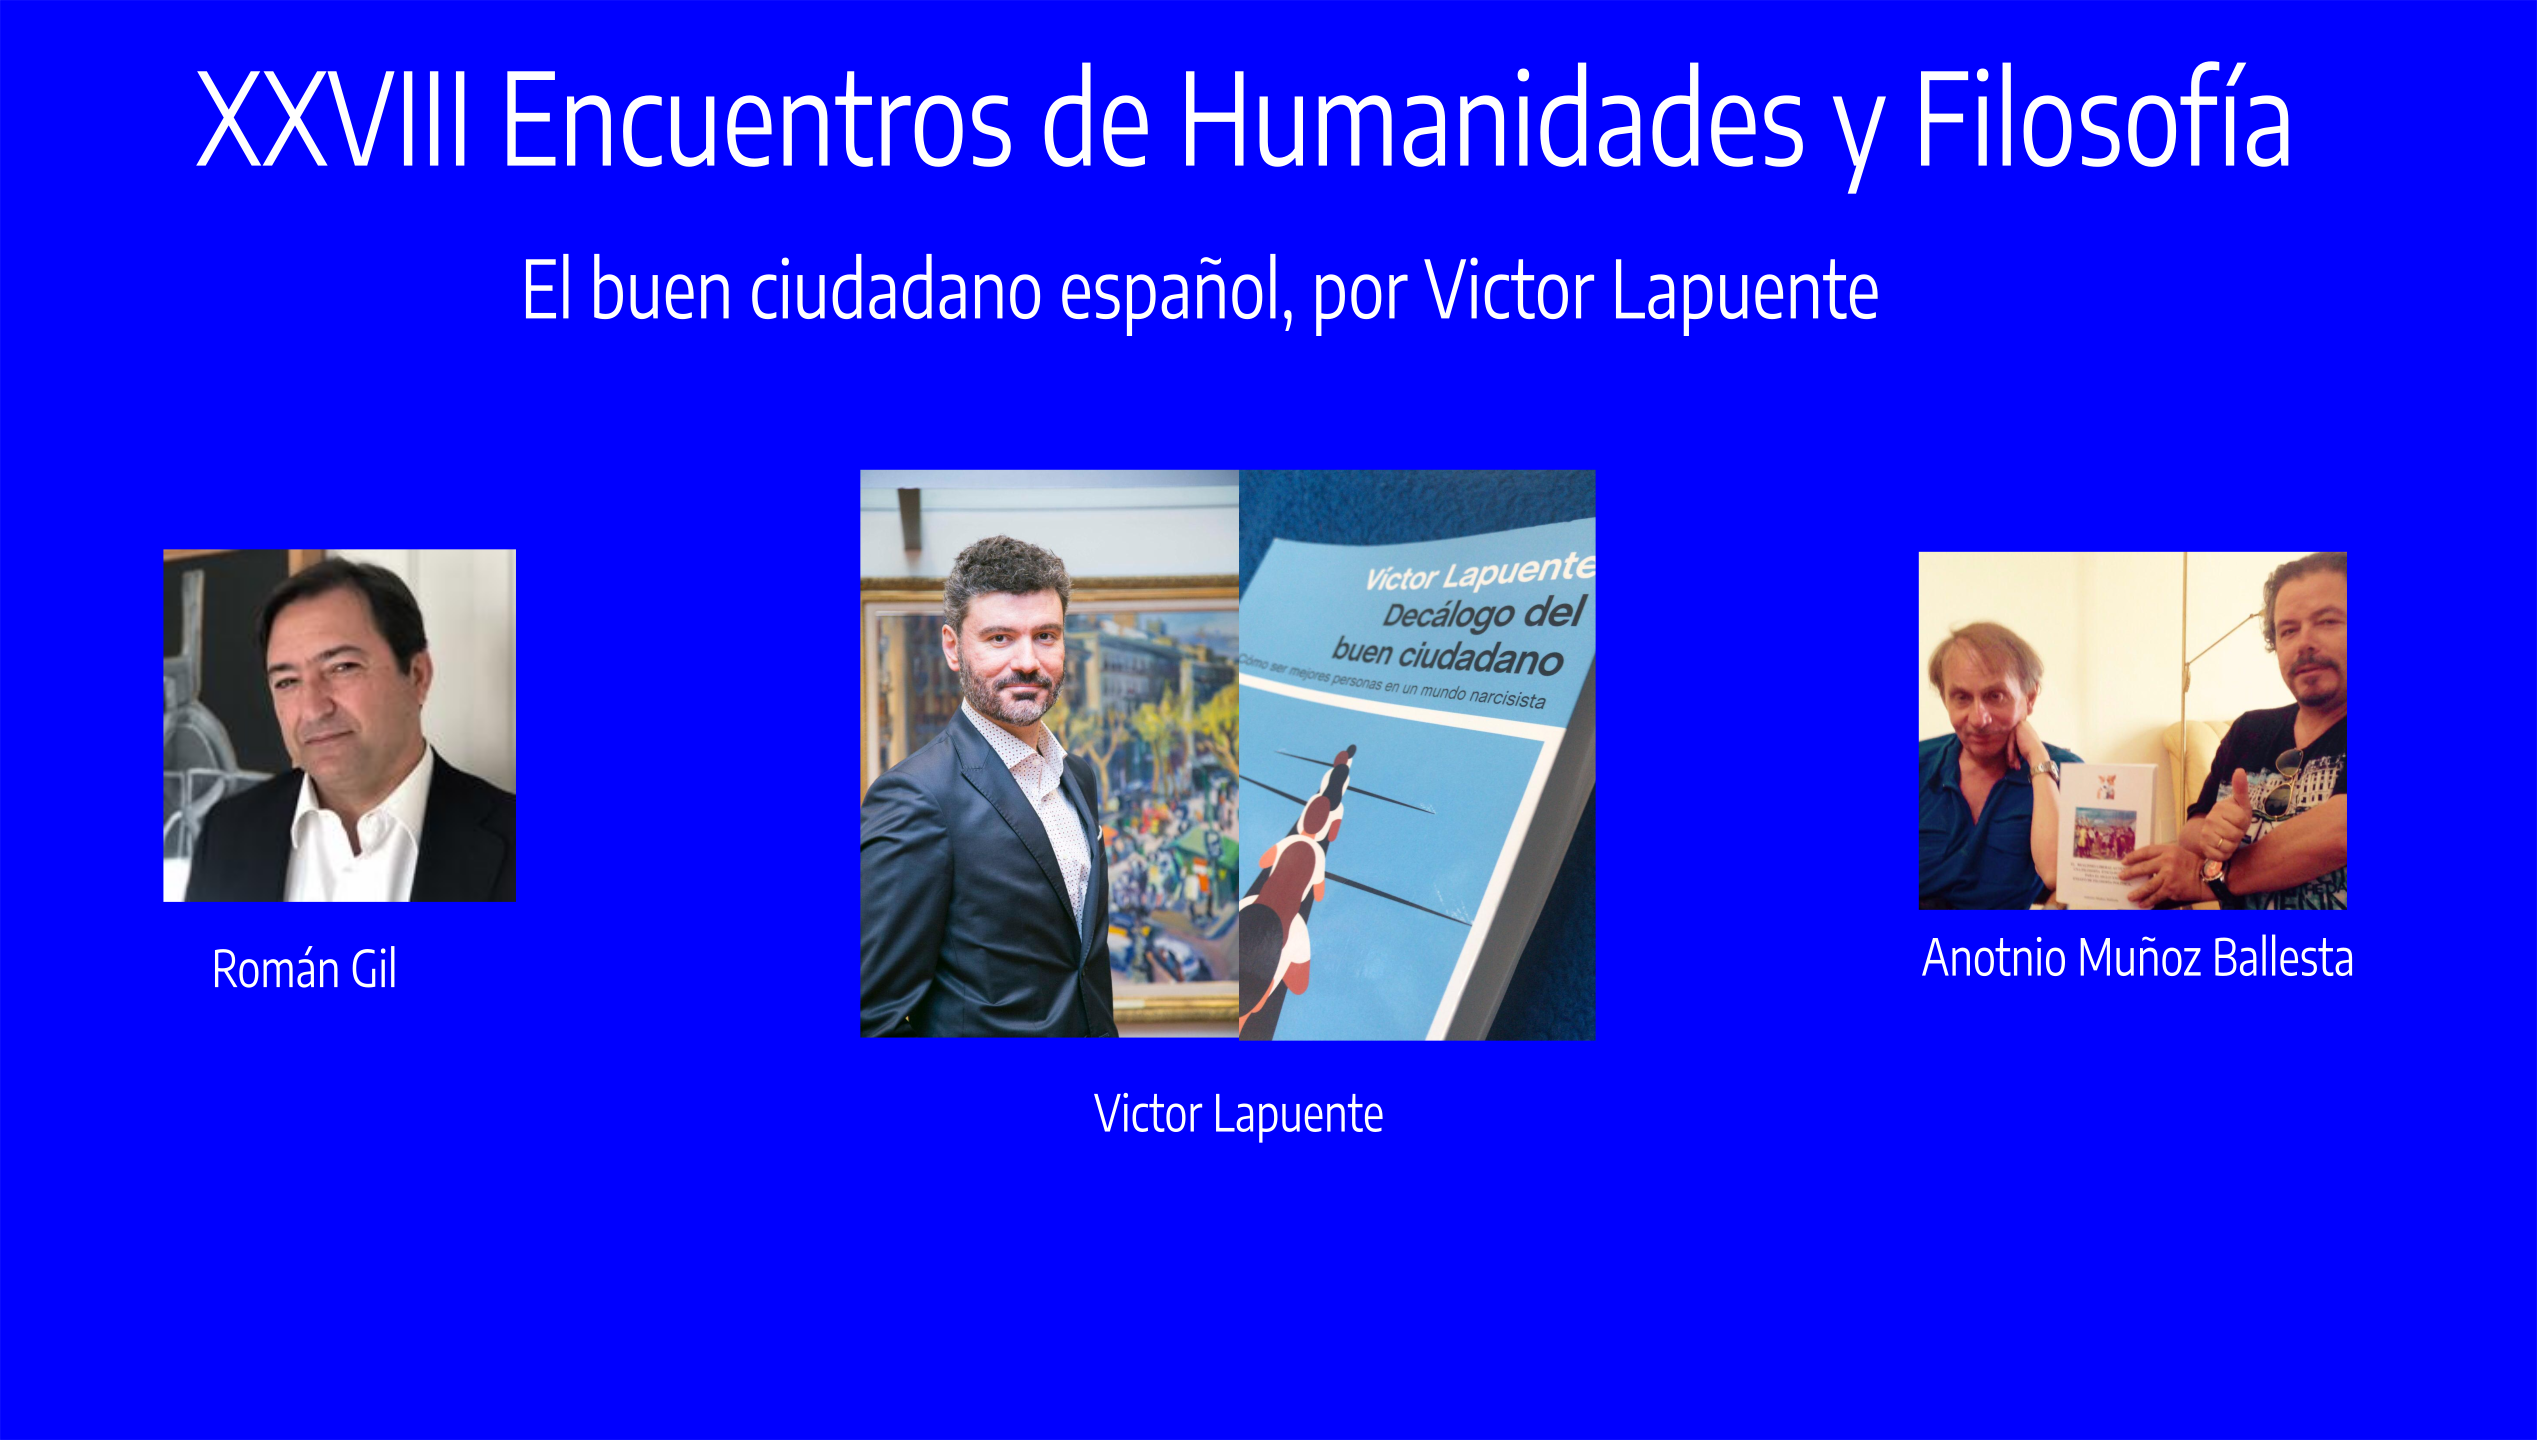 XXVIII Encuentros de Humanidades y Filosfofía, El buen ciudadano español, por Victor Lapuente.